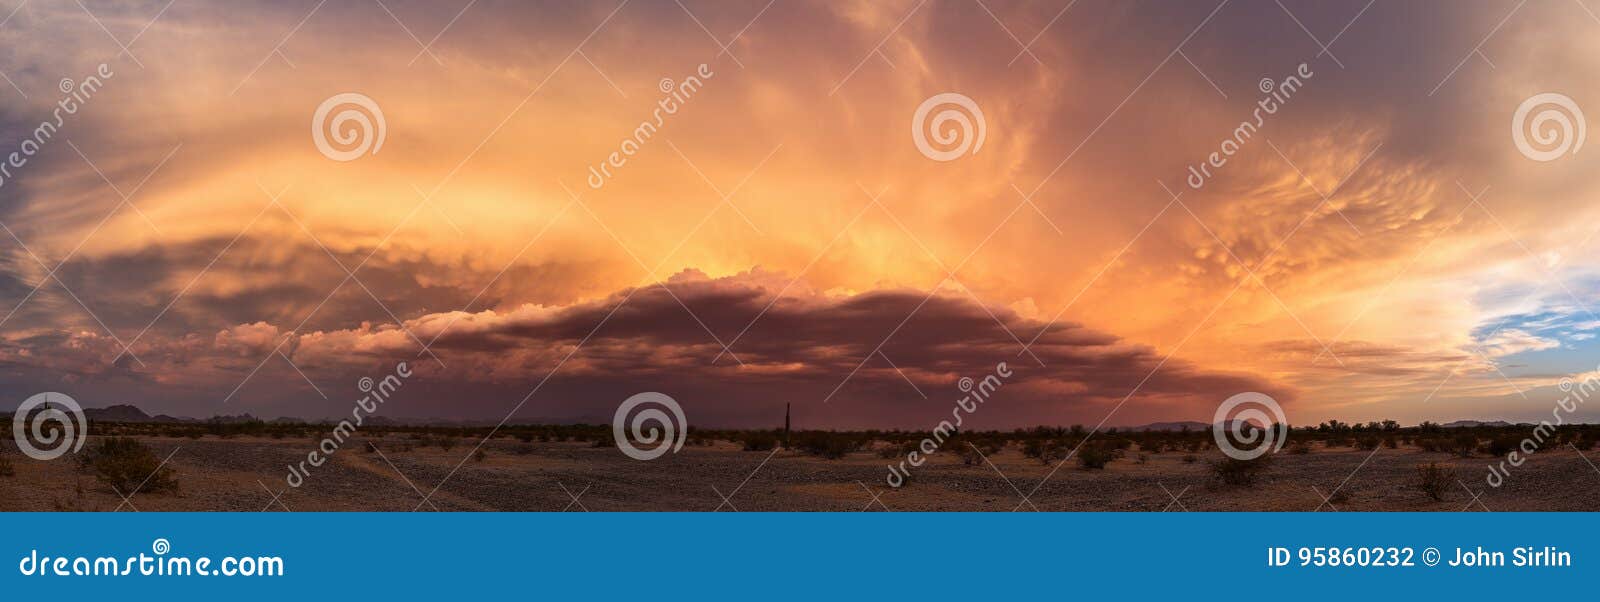 arizona monsoon sunset panorama